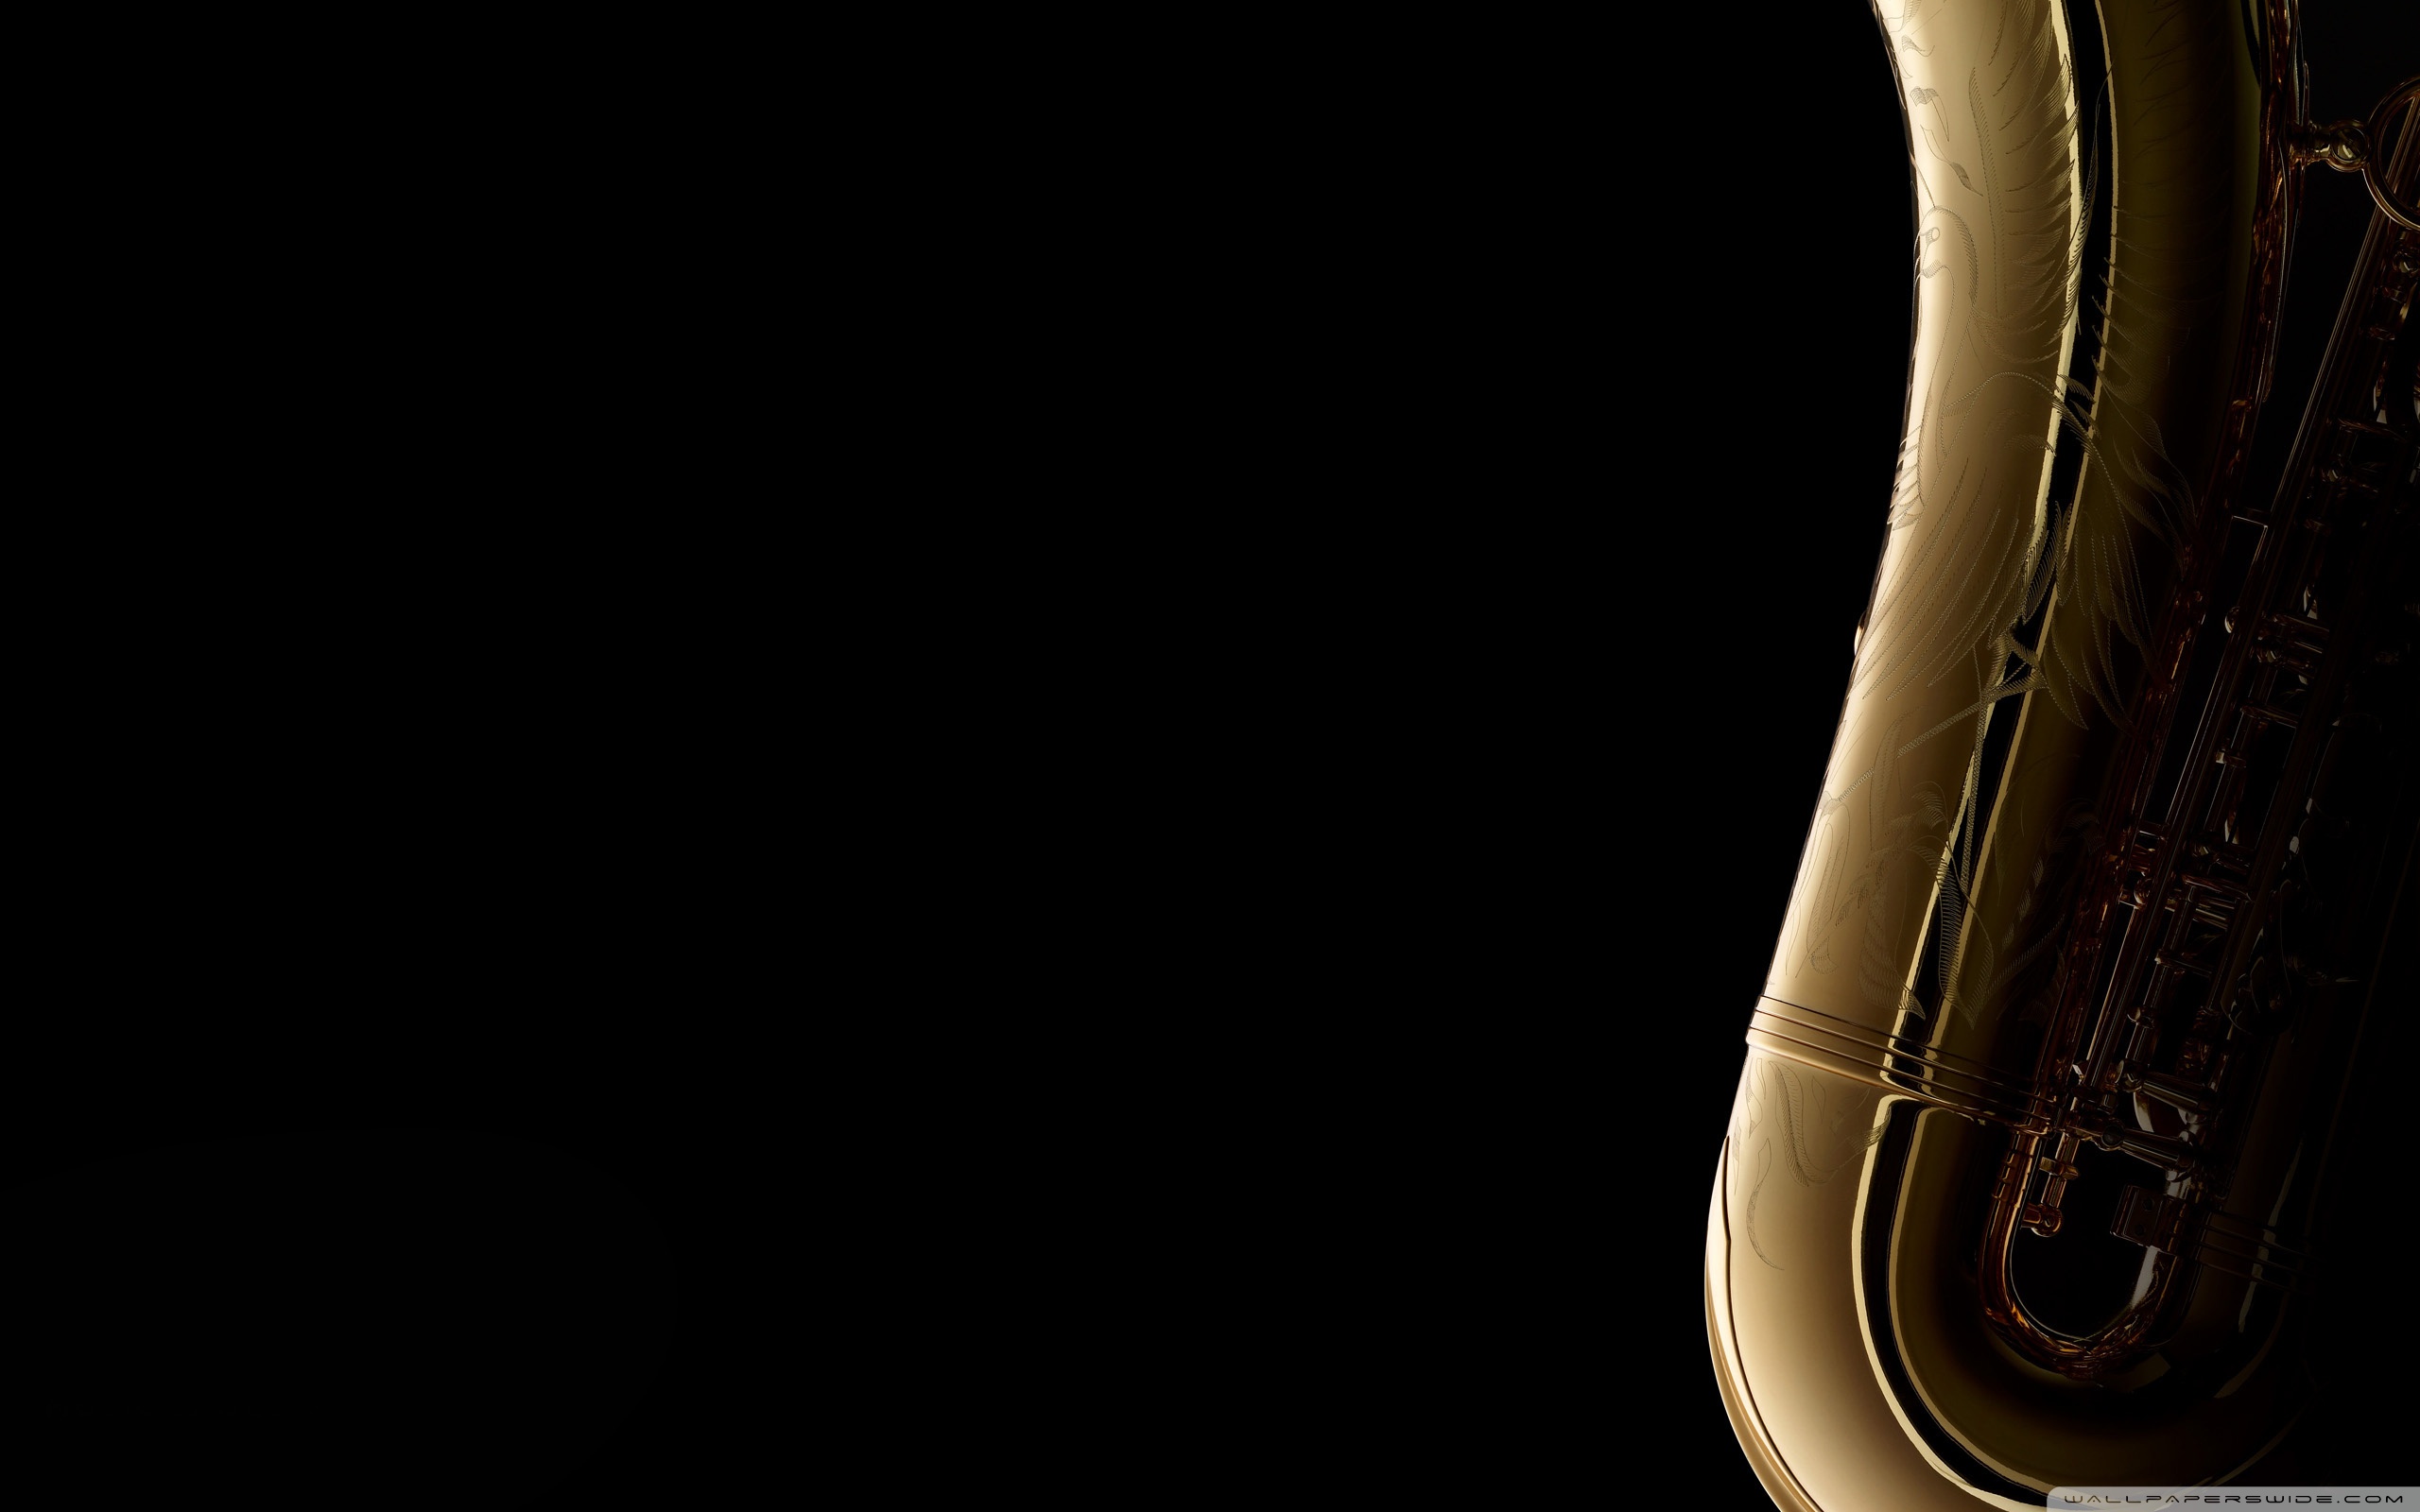 Saxophone On Black Background 4K HD Desktop Wallpaper For